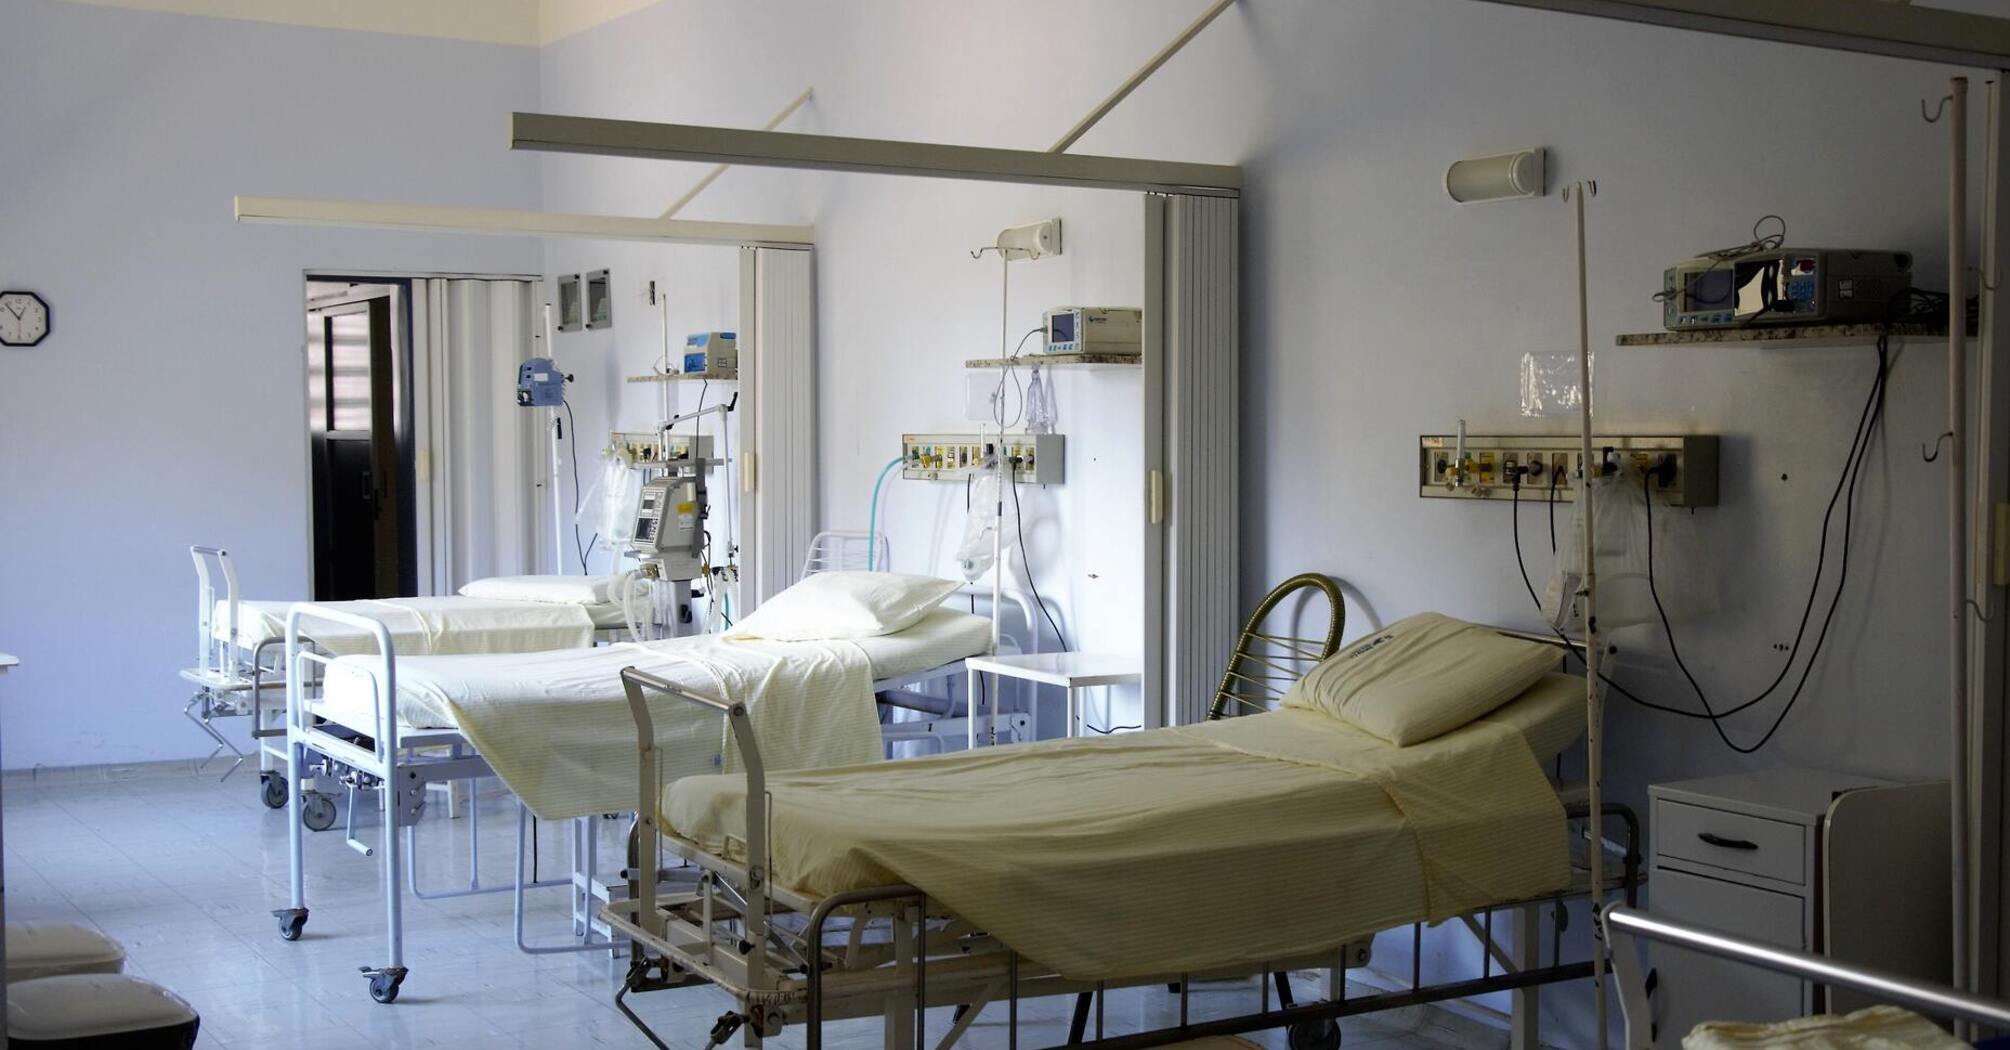 Больничные запреты - что нельзя делать в больнице пациентам и персоналу